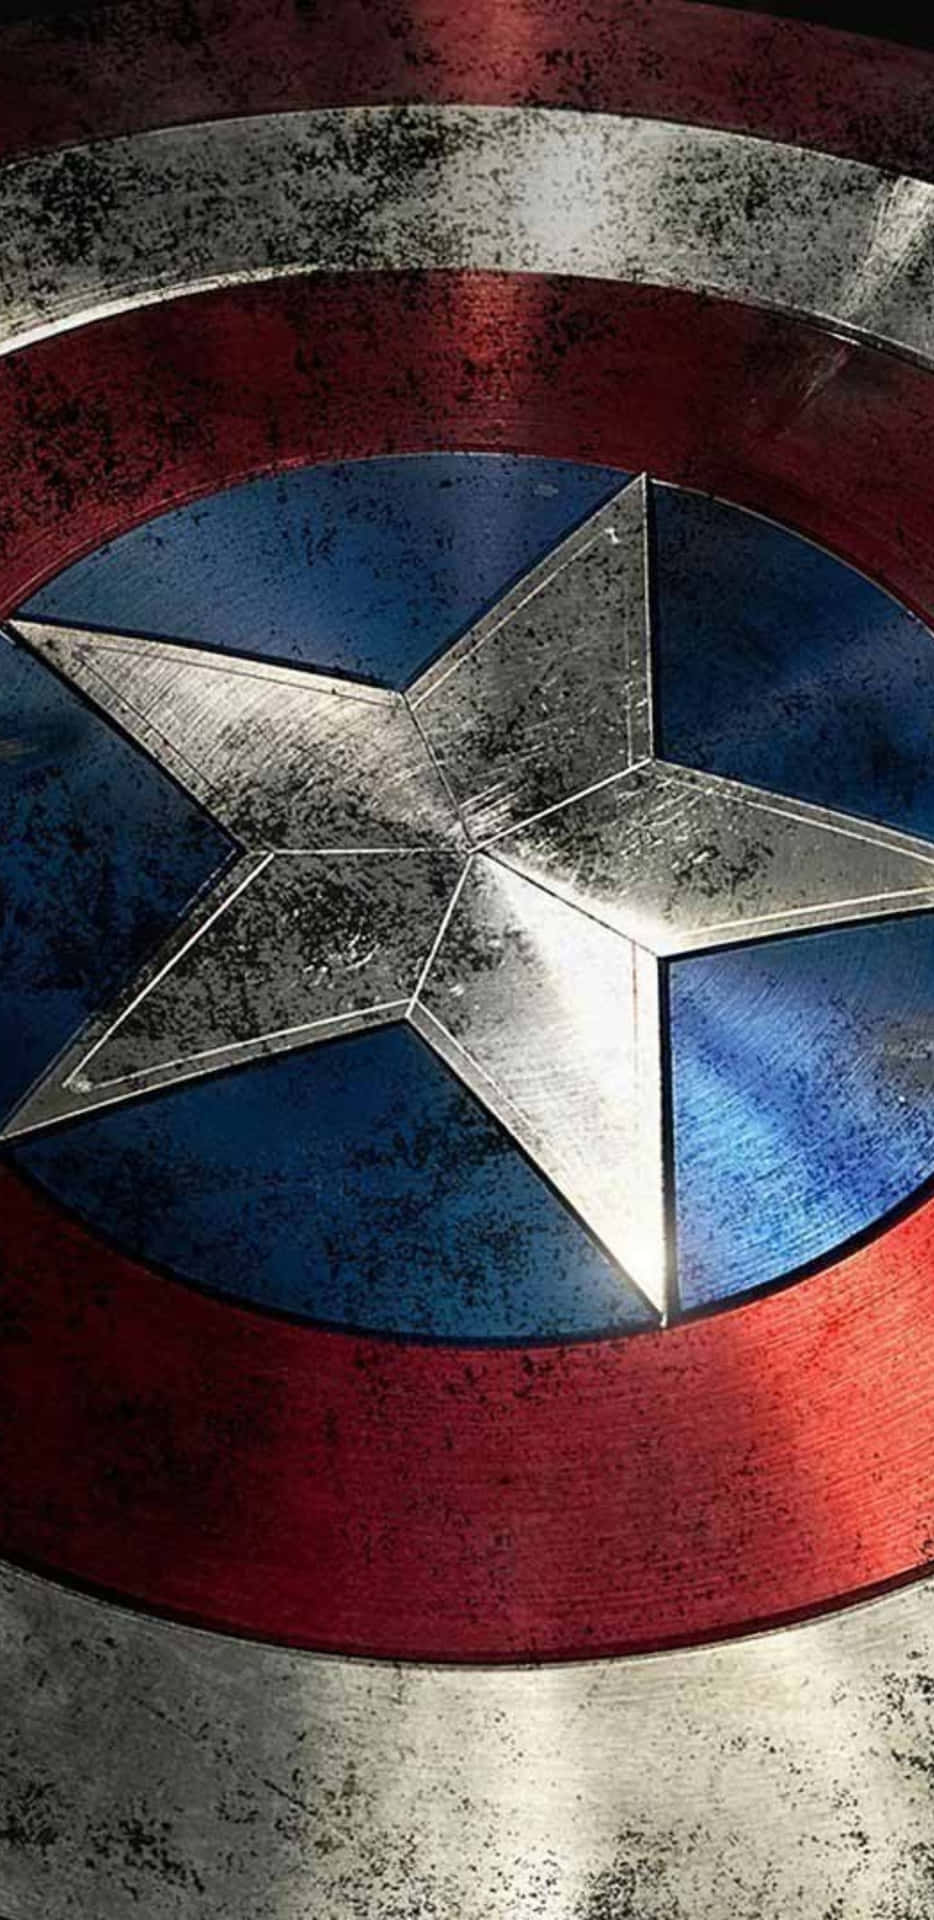 Pixel3xl Bakgrundsbild Med Captain America-sköld.